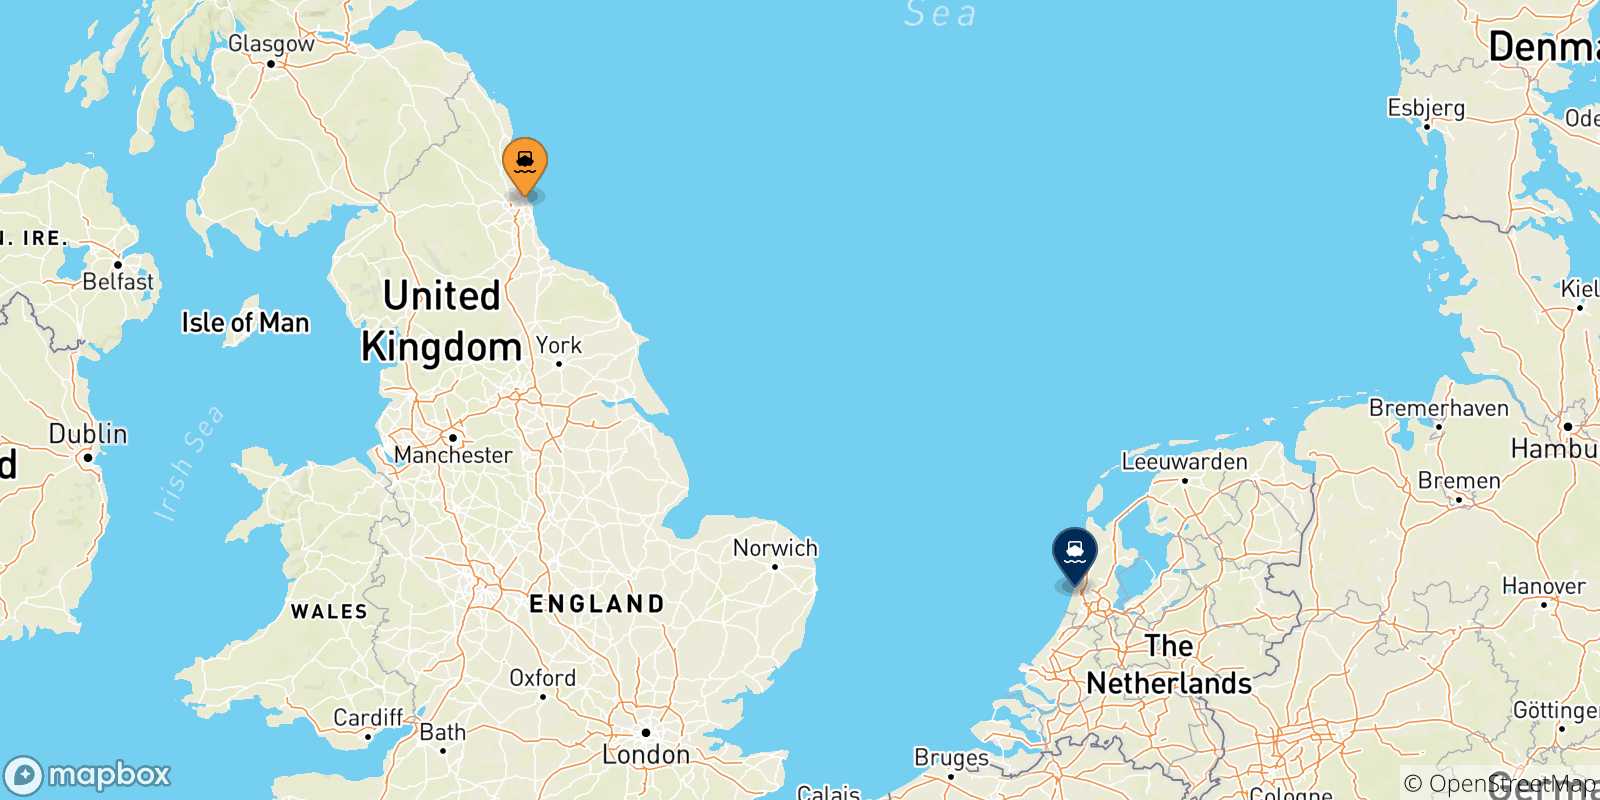 Mappa delle possibili rotte tra Newcastle e l'Olanda